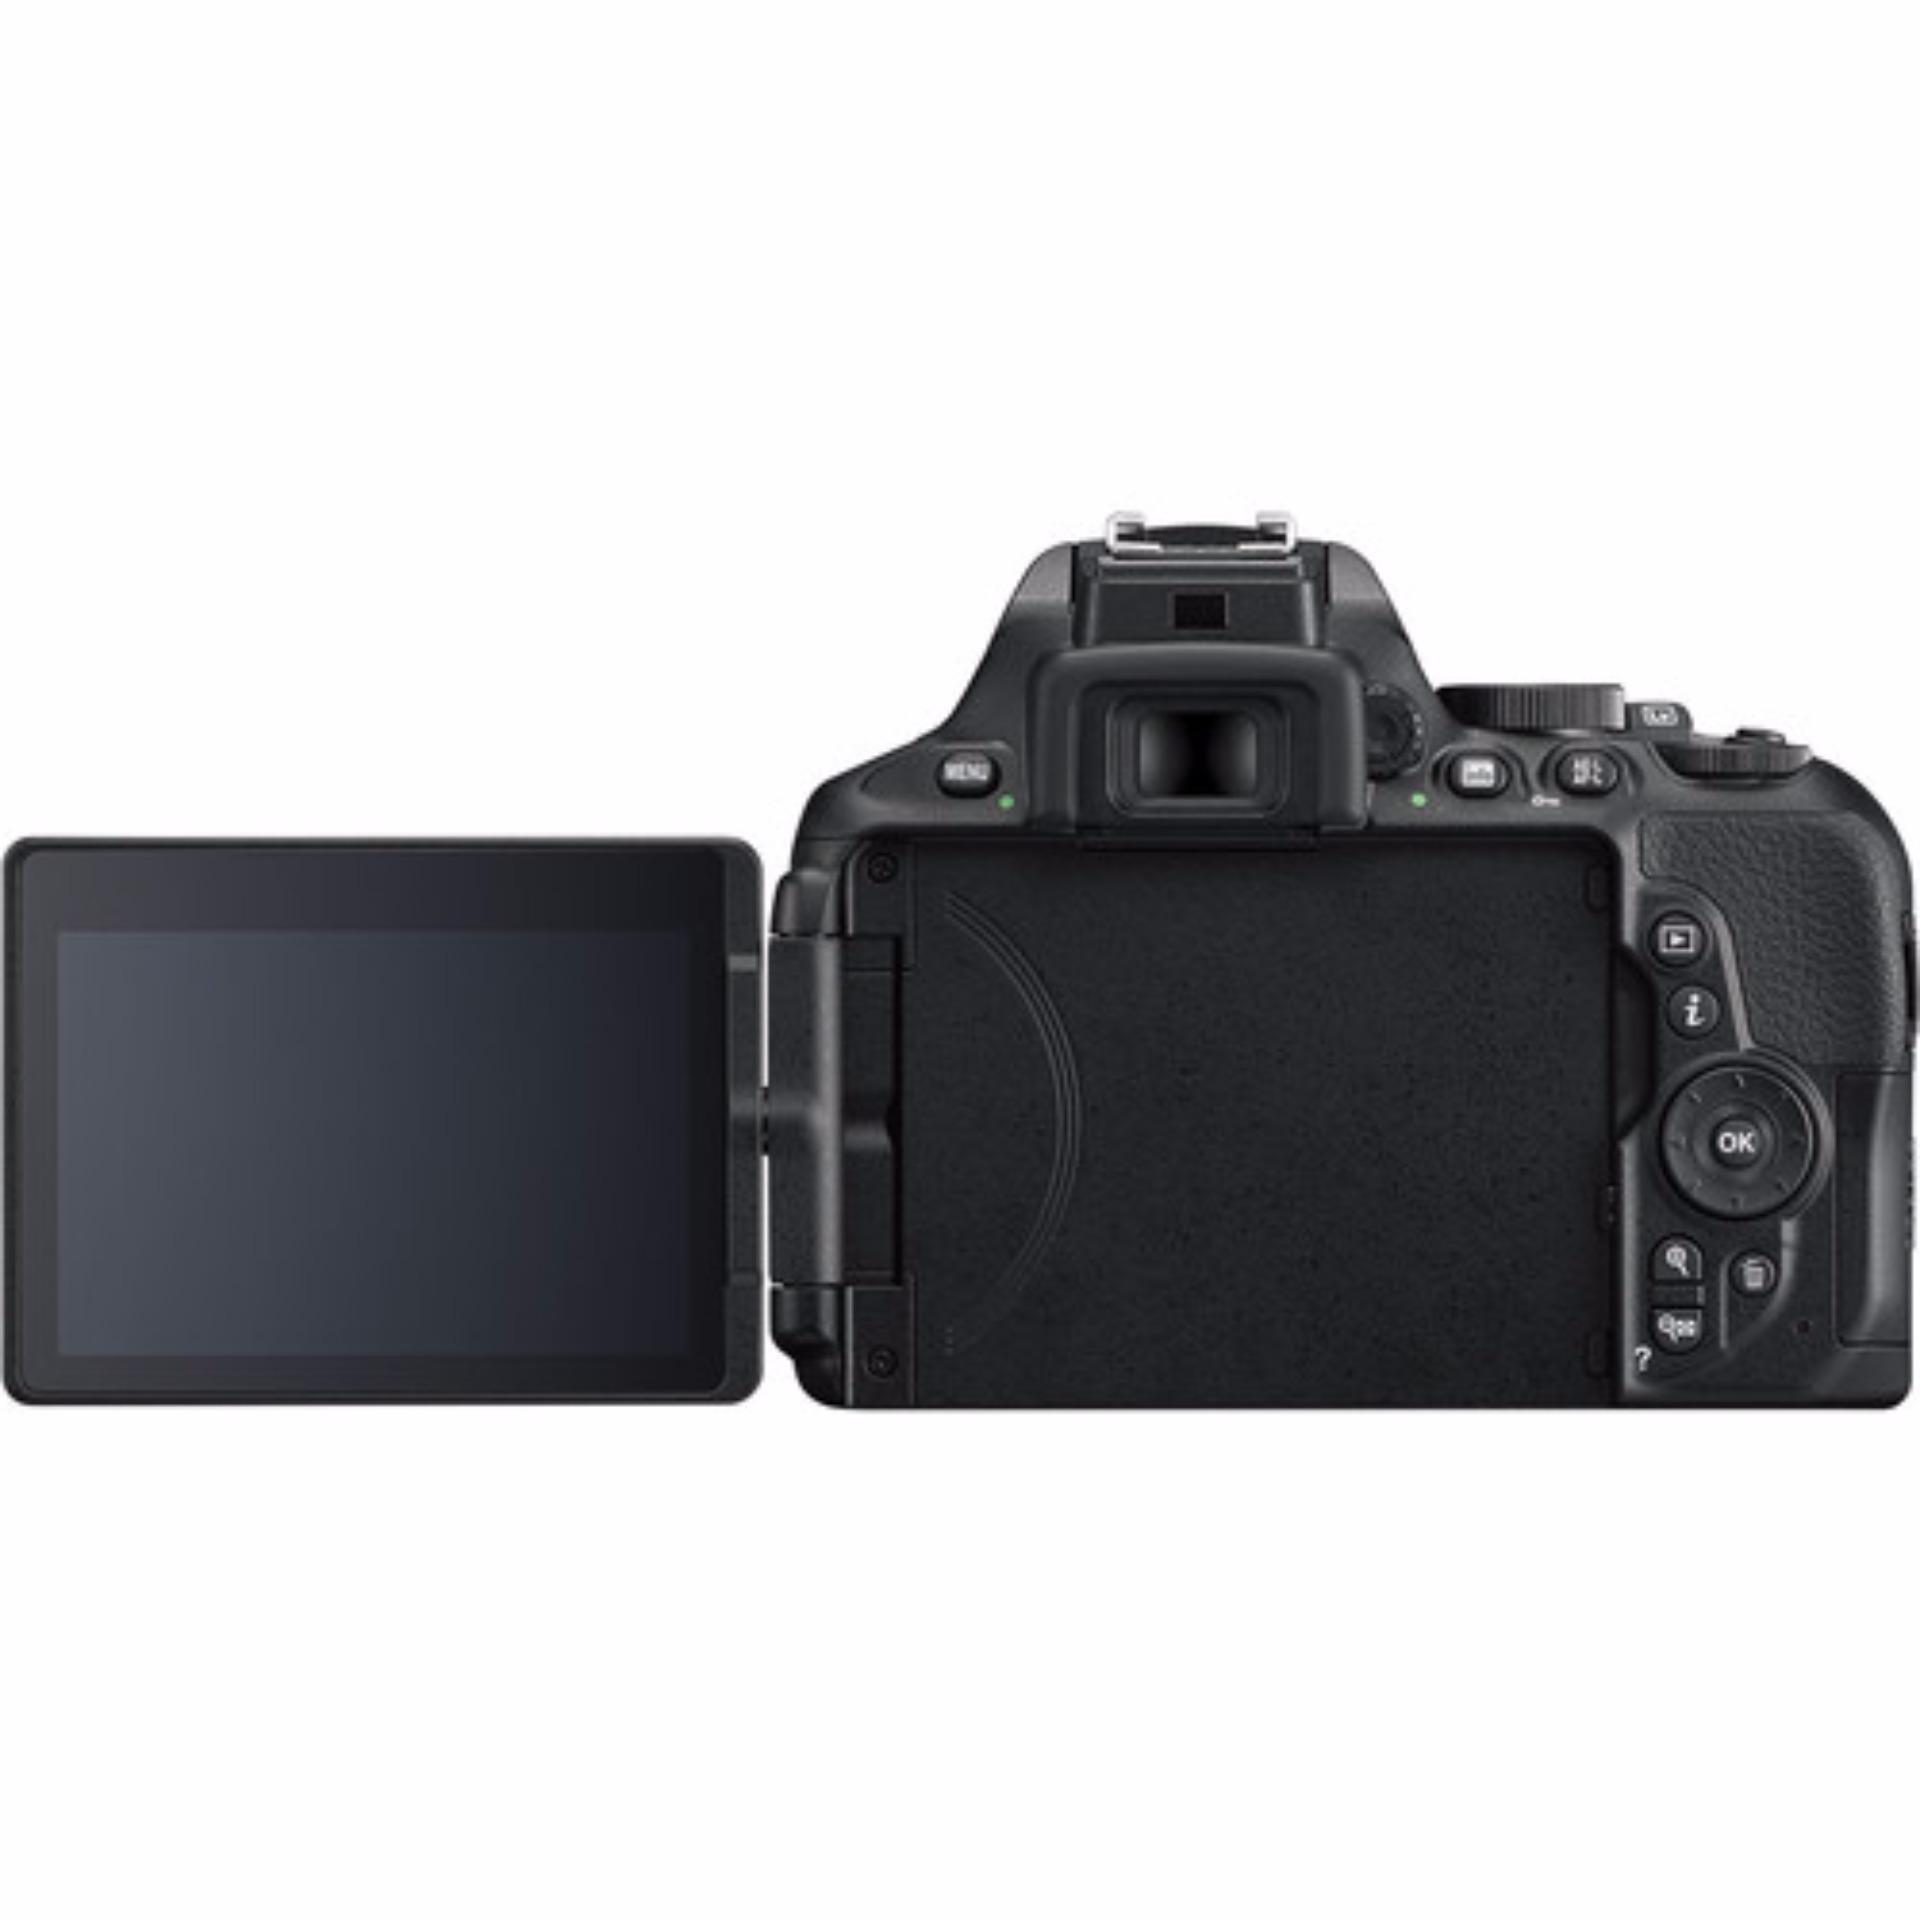 Nikon D5600 + 18-55mm VR Kit(Black)